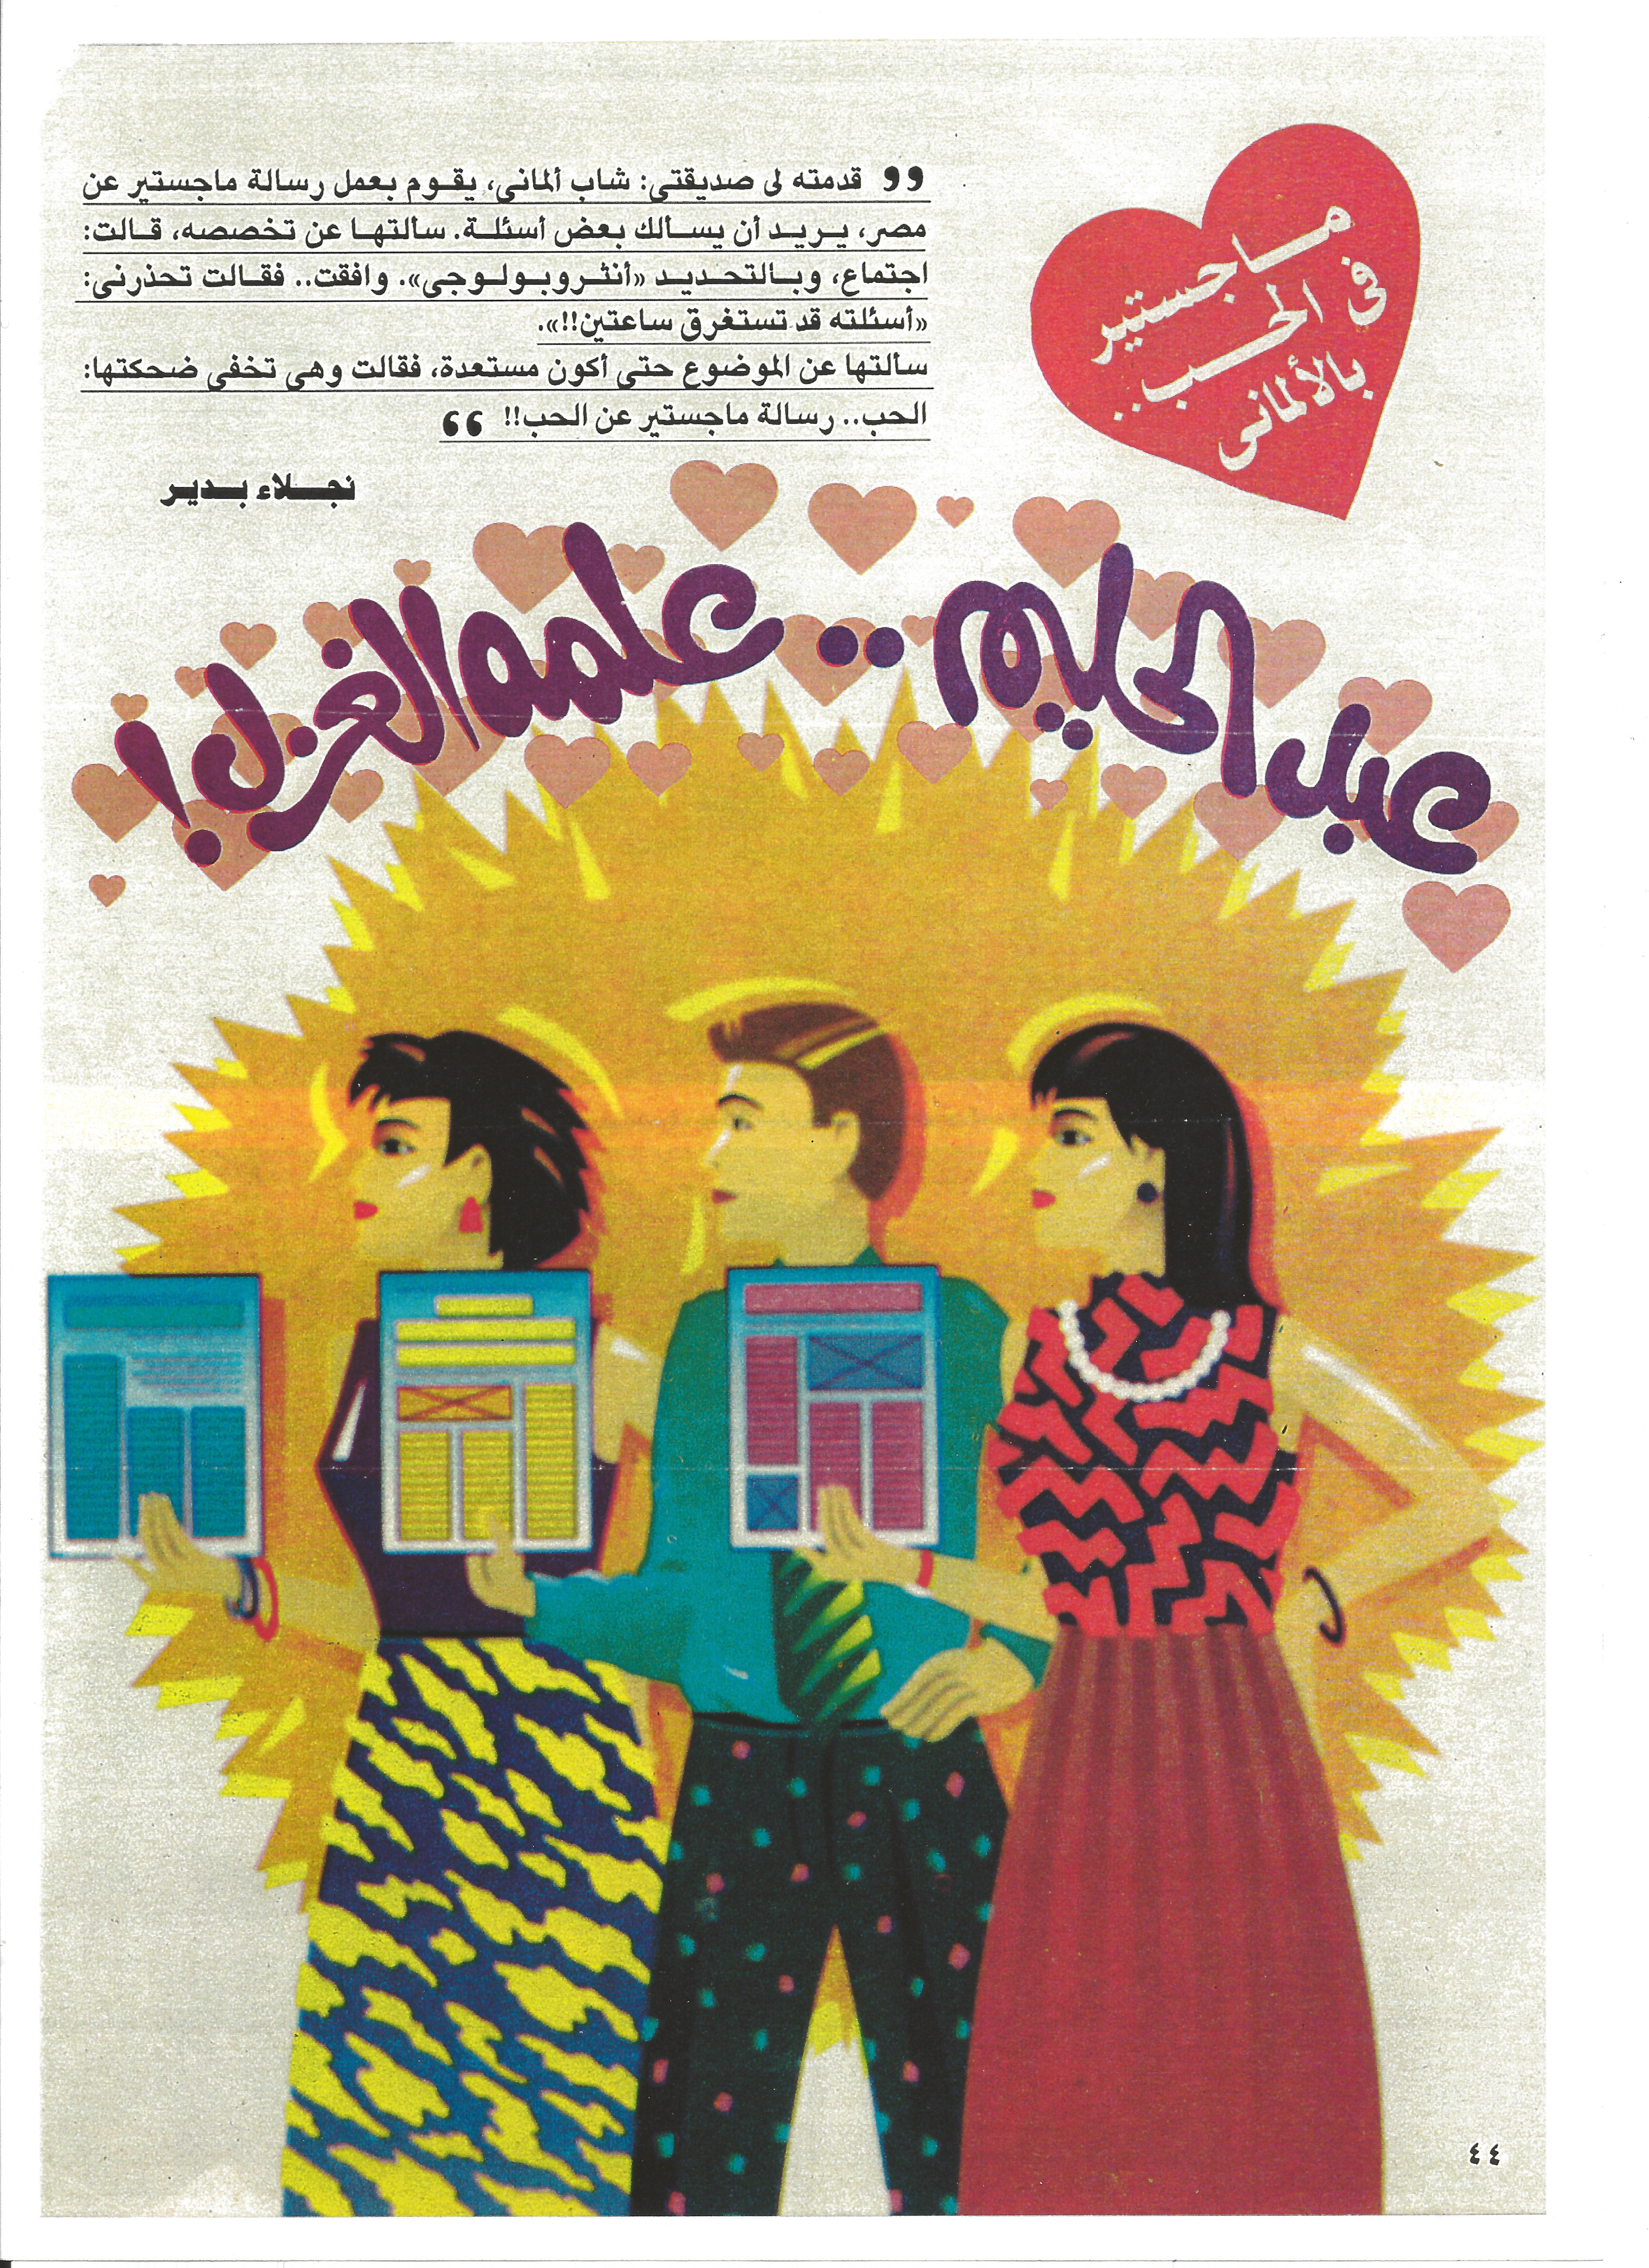 الحب في كل مكان في مصر  وأيضاً في هذه المجلة المصرية عن الحياة الاجتماعية .  Foto: © Steffen Strohmenger